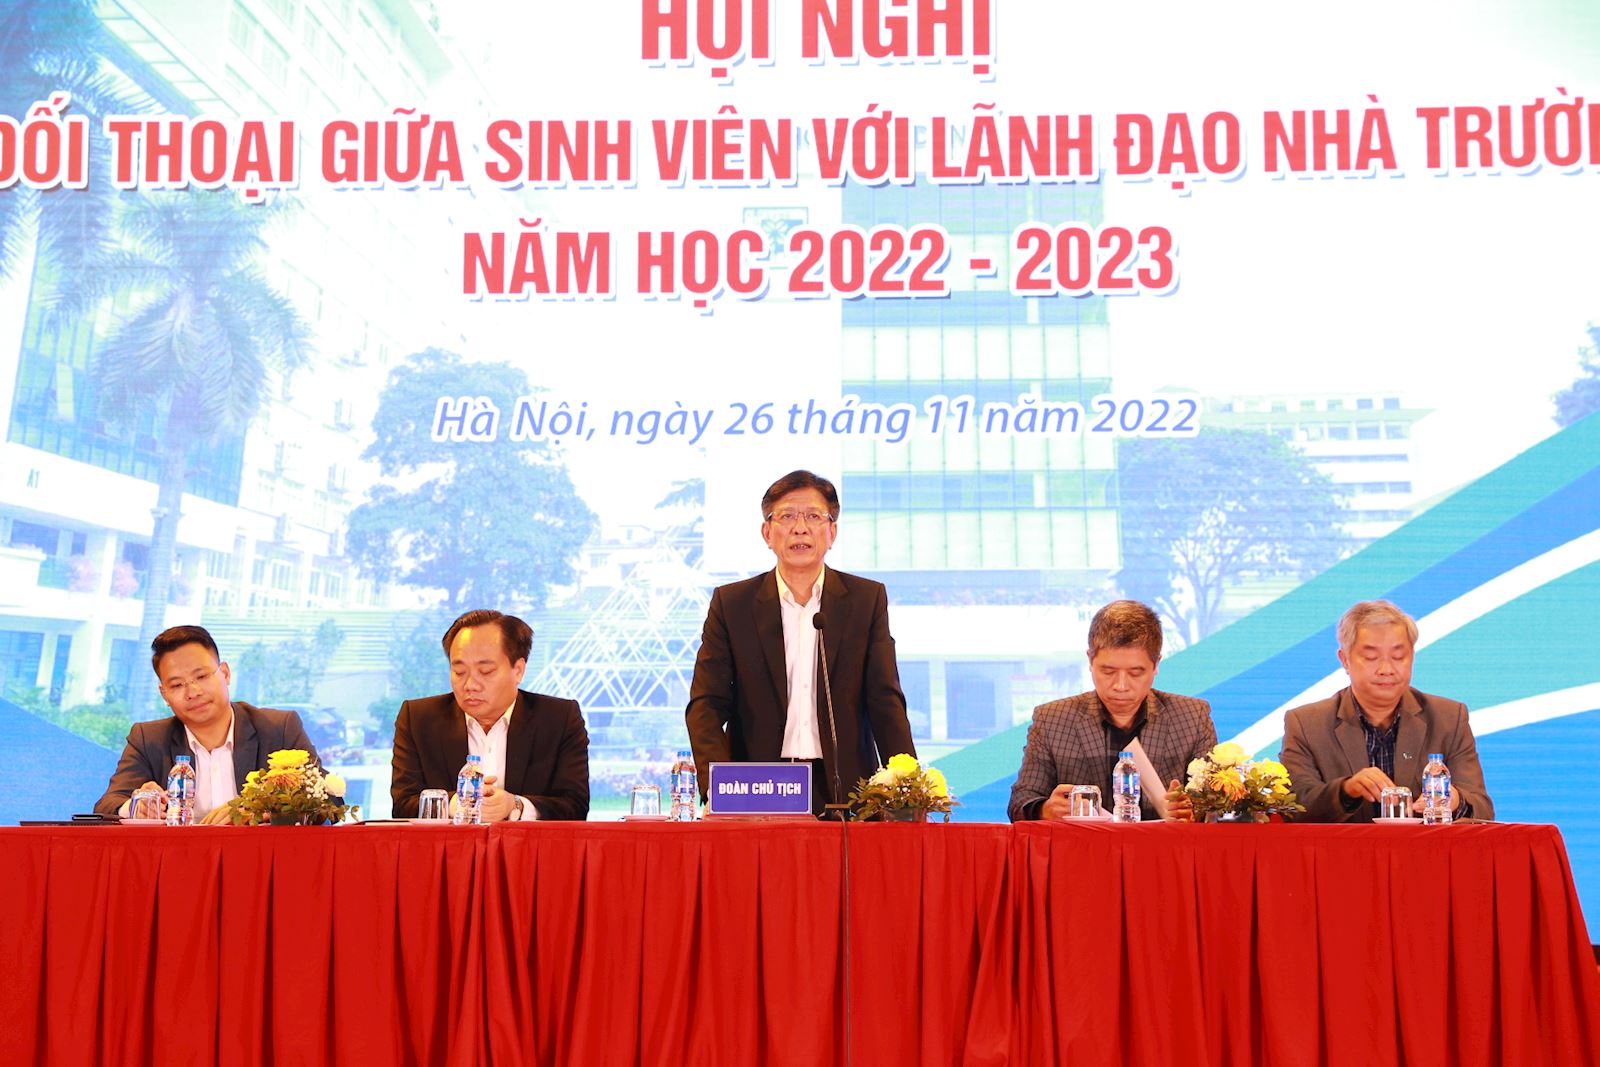 Hội nghị Đối thoại giữa sinh viên và lãnh đạo Trường Đại học Xây dựng Hà Nội năm học 2022-2023